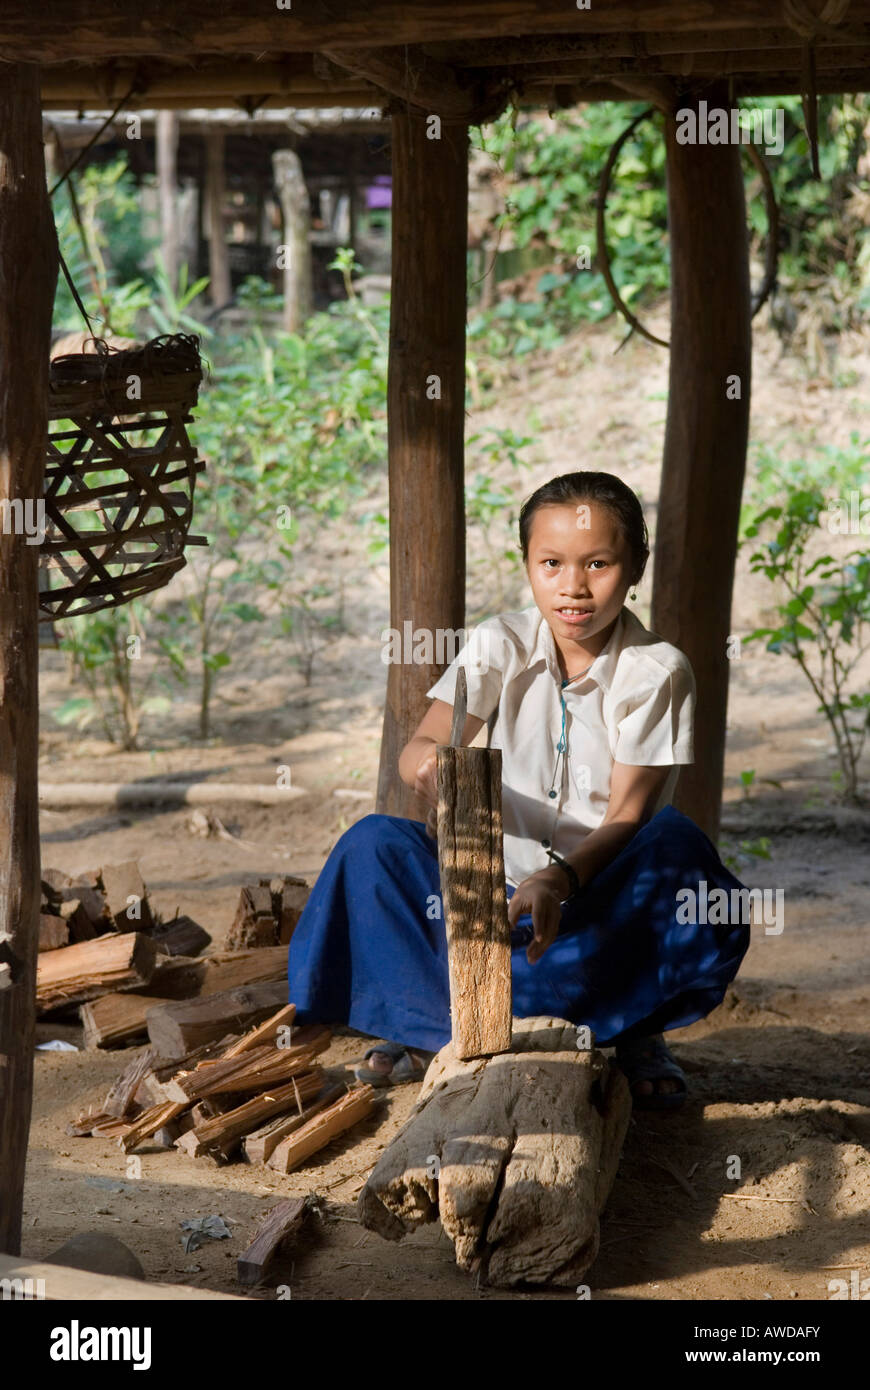 Bois de feu, fille hacking Ie camp de réfugiés Tu ets, PDI-région en bordure de la Thaïlande près de Mae Sariang, Birma Banque D'Images